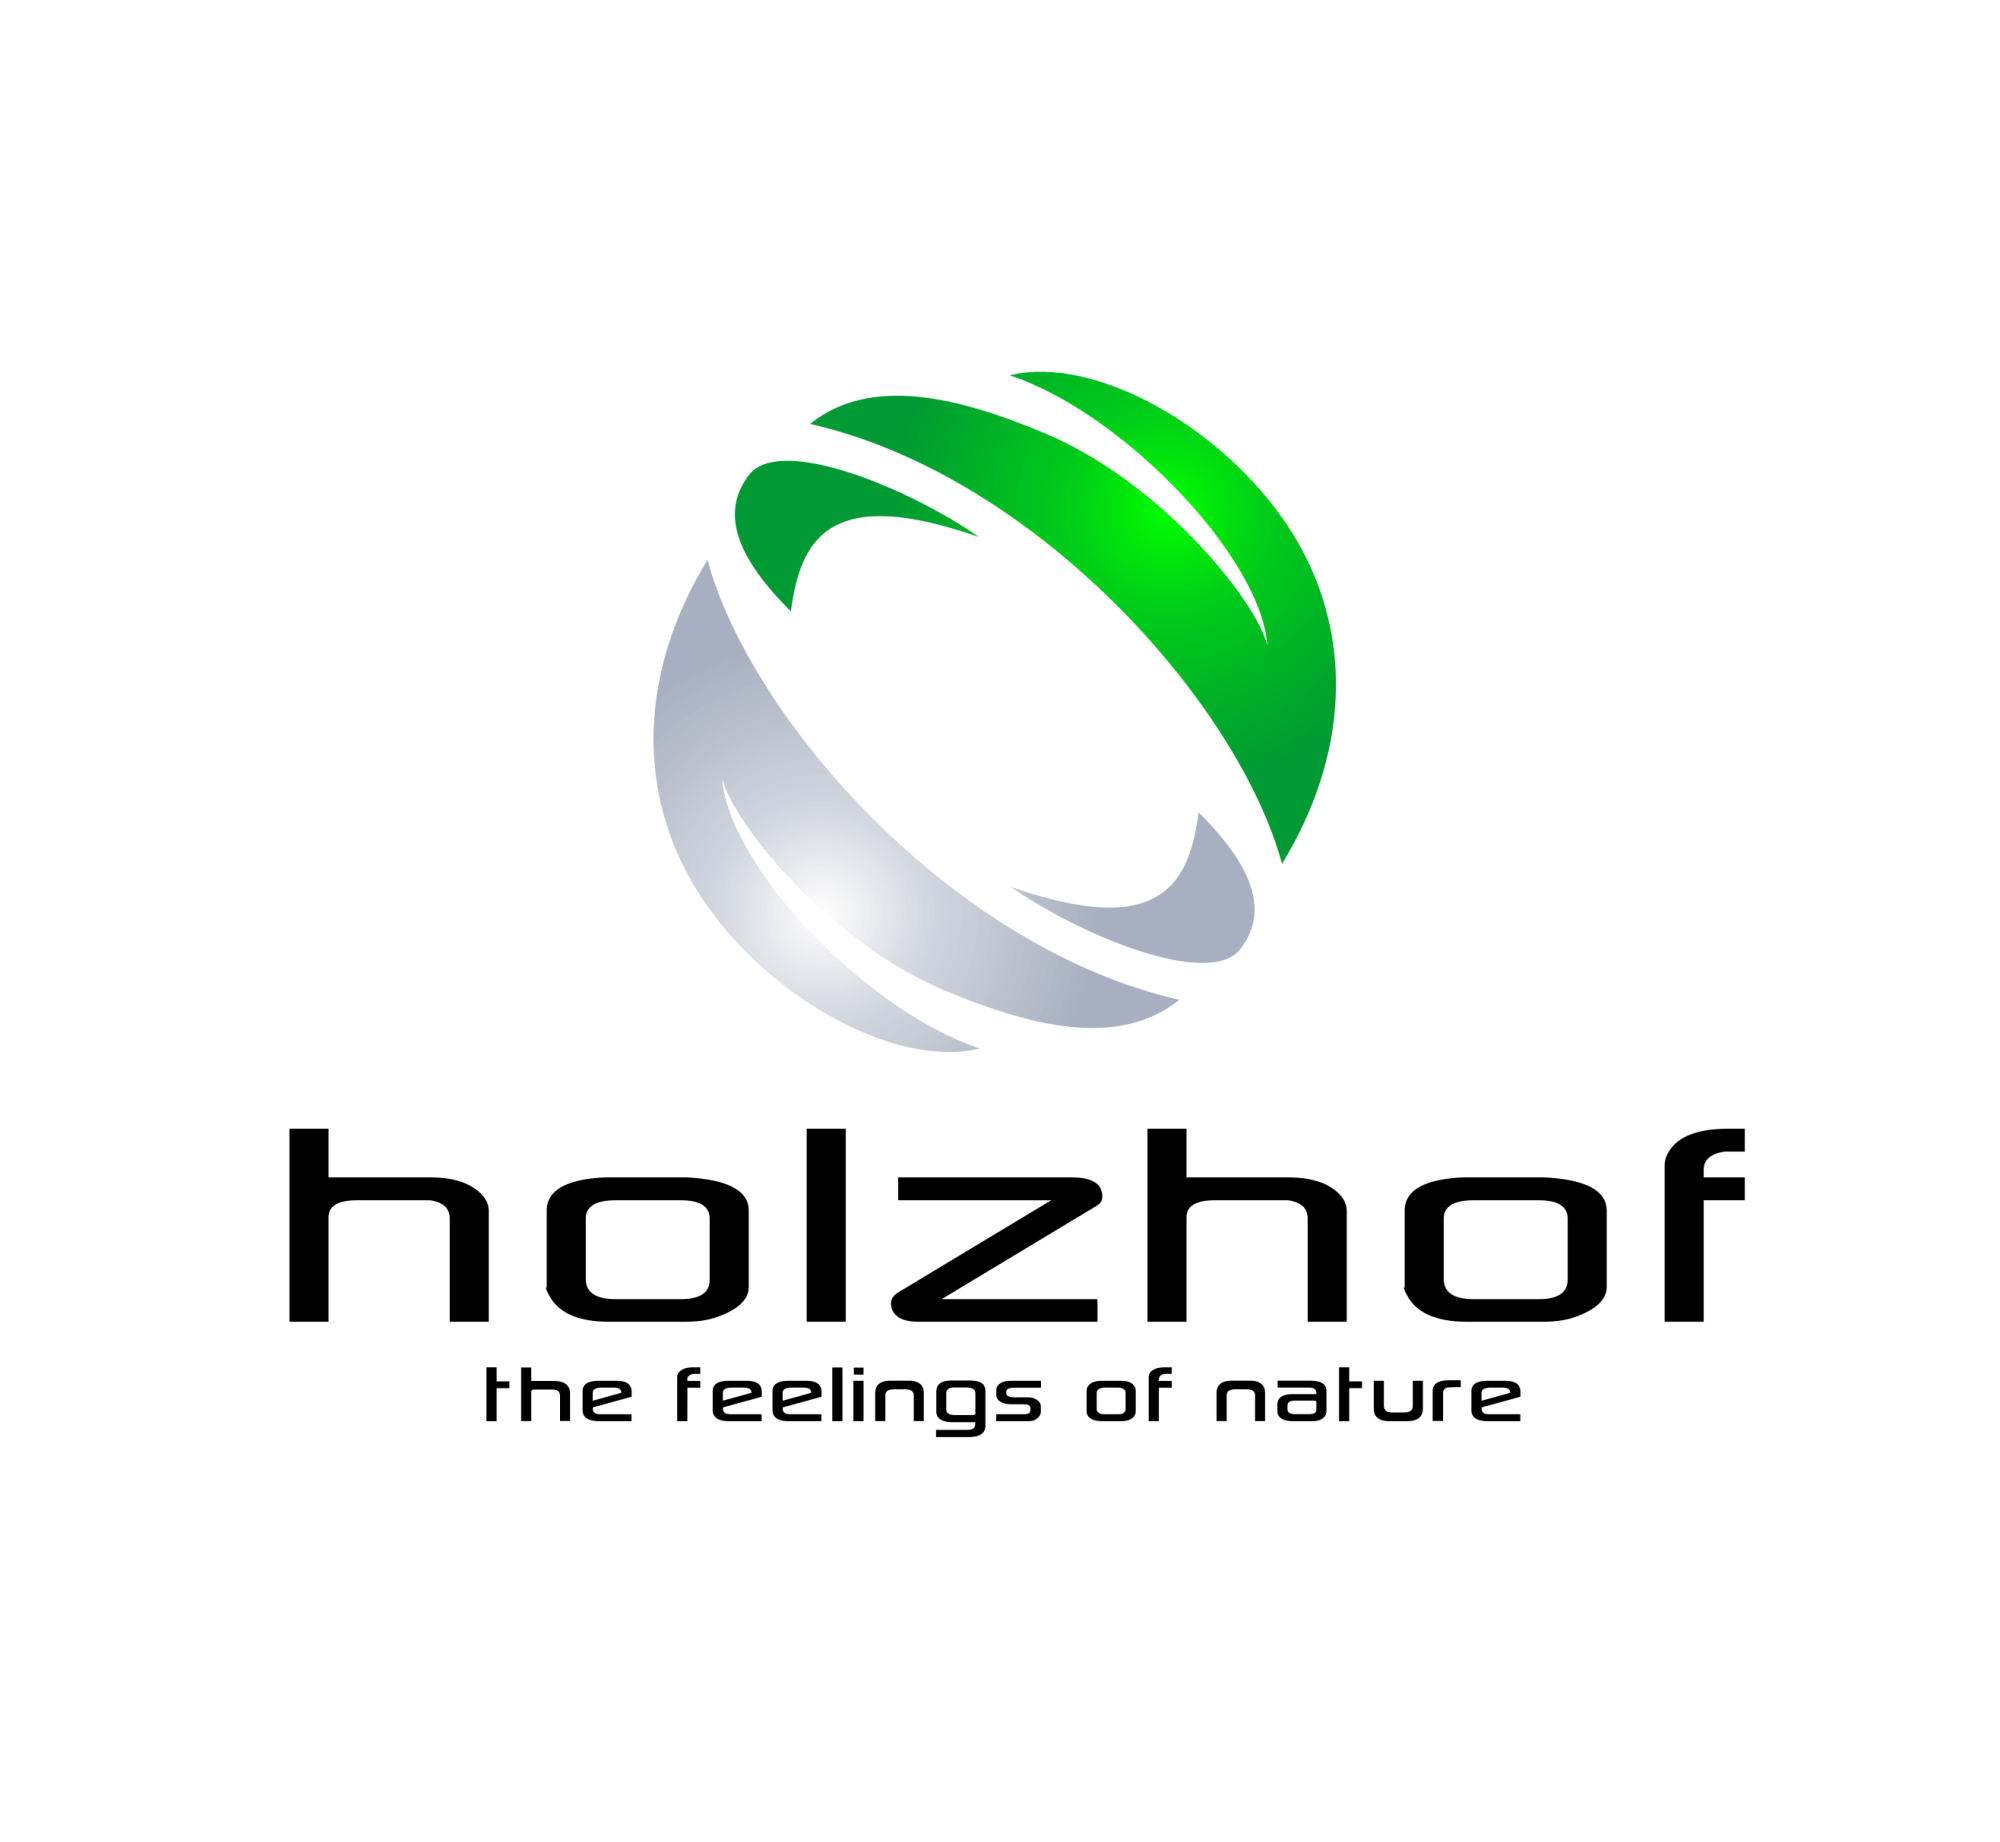 Holzhof